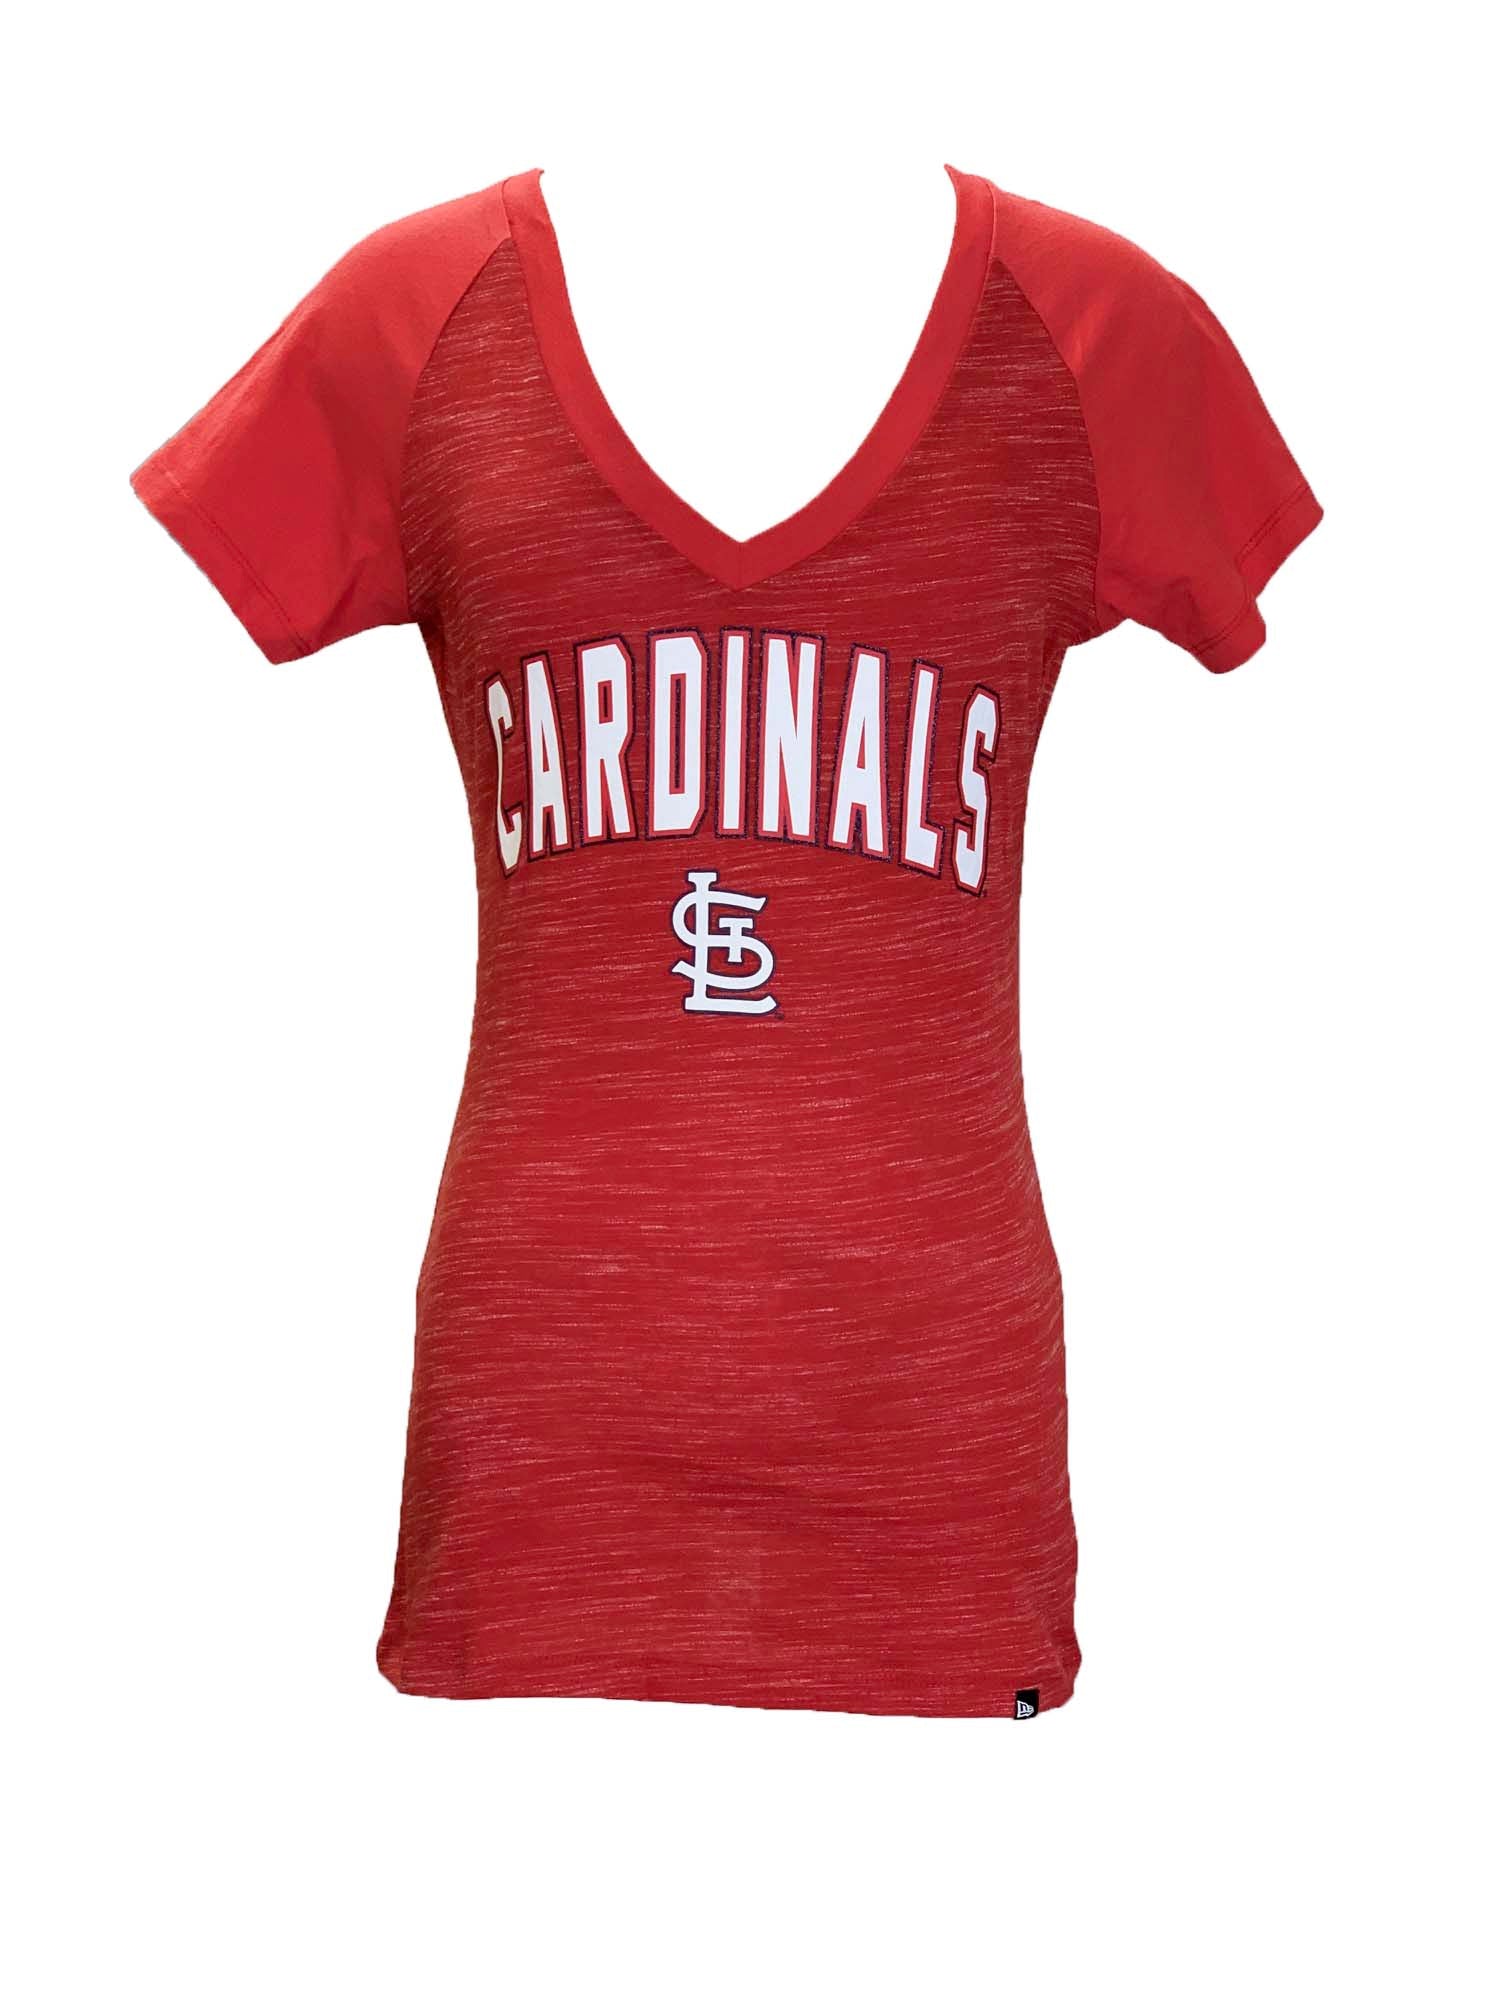 St. Louis Cardinals, Shirts